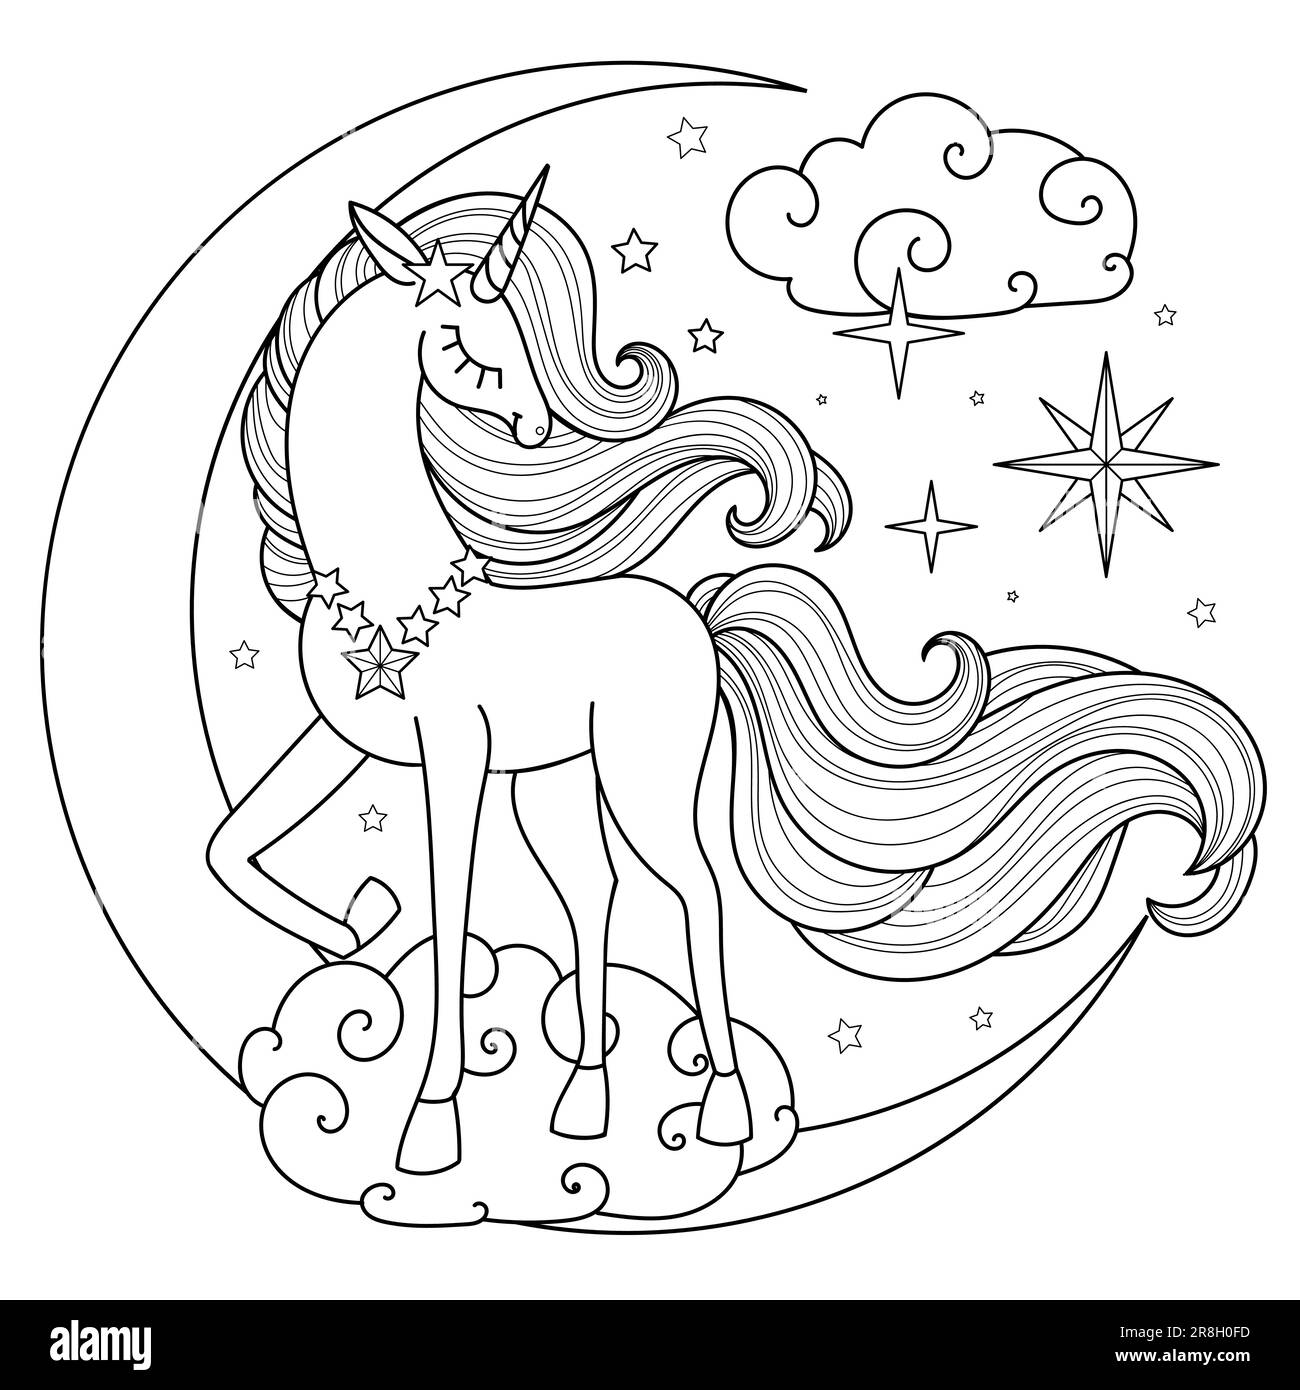 Une belle licorne avec une longue queue sur la lune. Dessin linéaire noir et blanc. Pour la conception de livres de coloriage pour enfants, imprimés, affiches, c Illustration de Vecteur